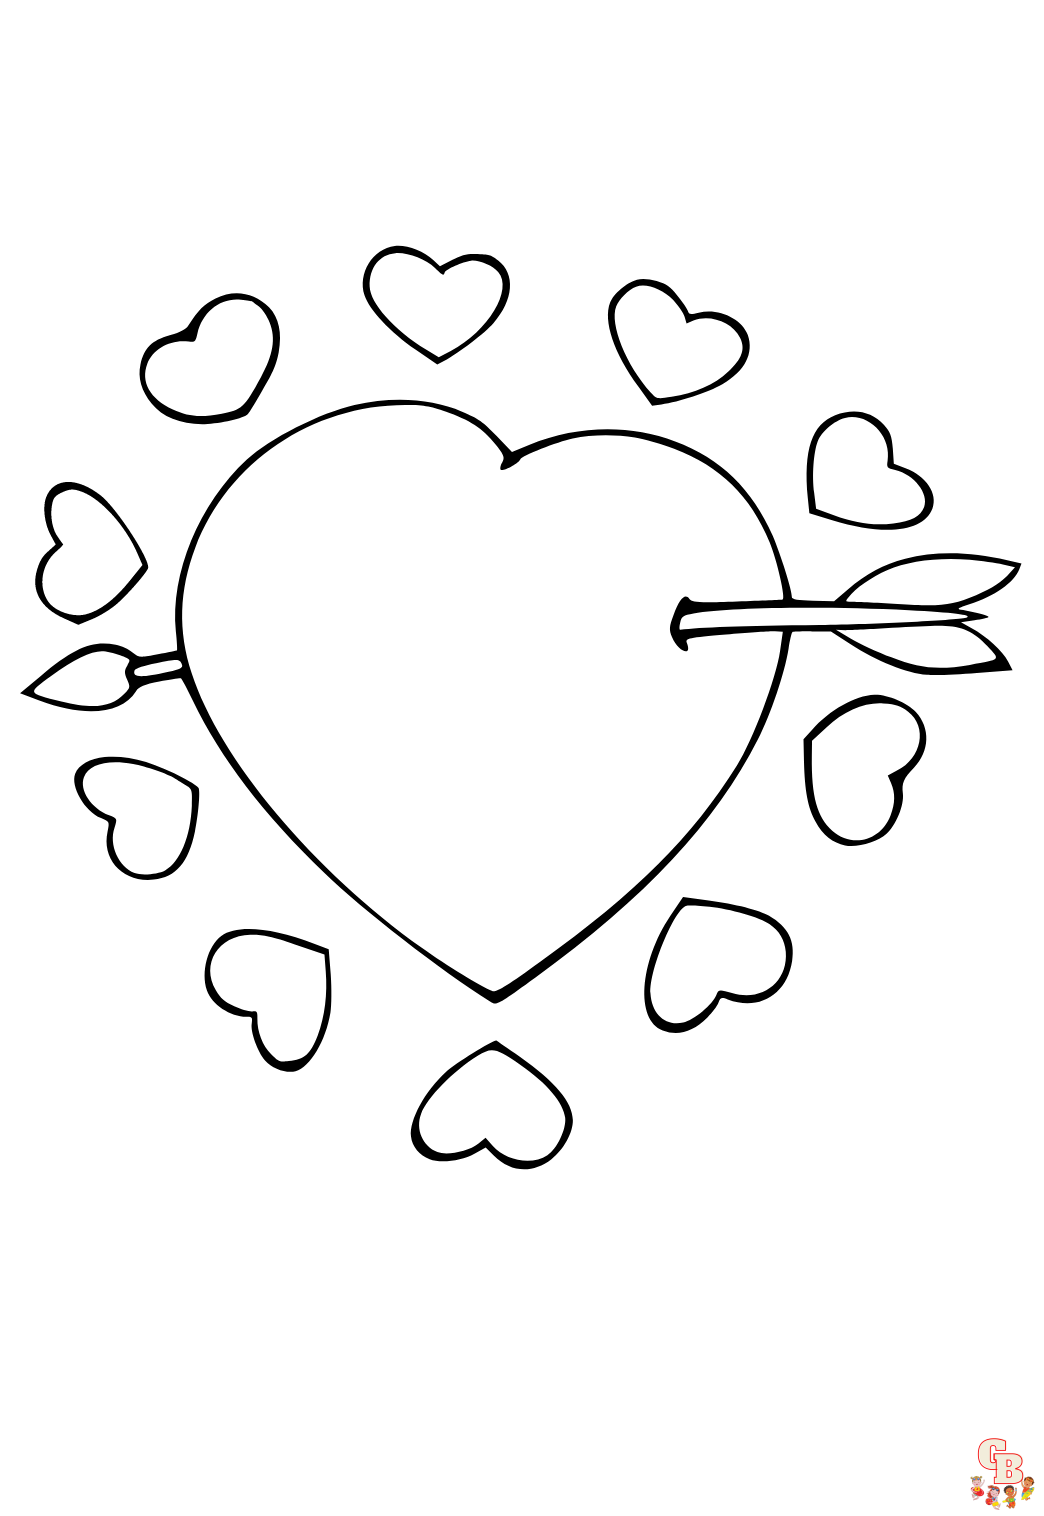 Kleurplaat liefde Gratis printbare kleurplaten van hartjes, liefdesbrieven, Valentijnsdag, koppels, trouwen, bloemen en harten en romantische dates